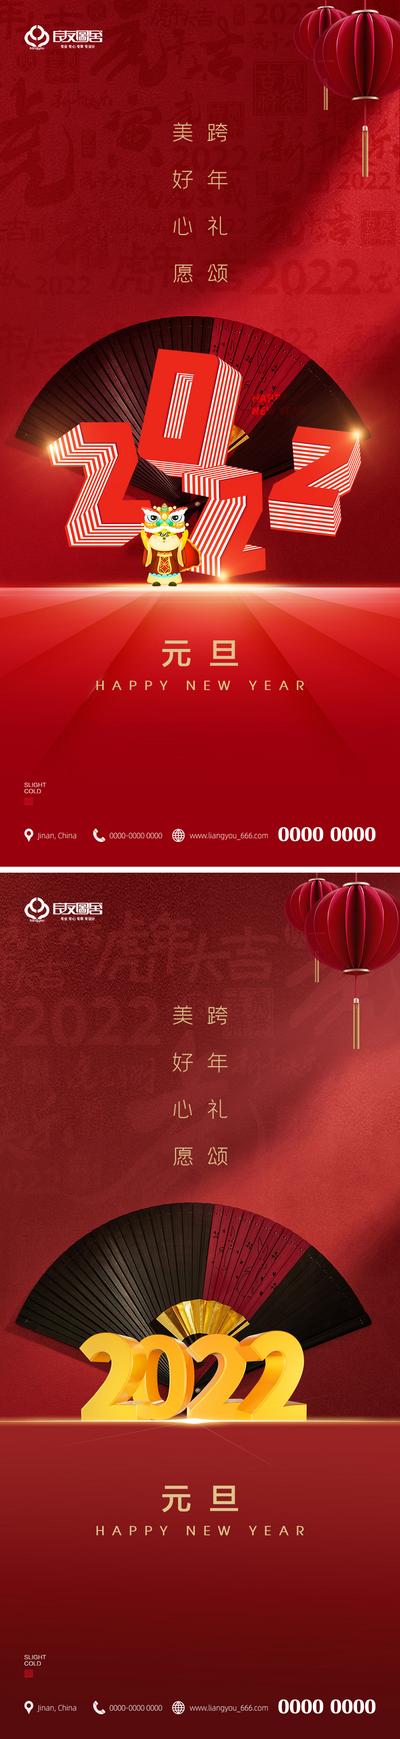 南门网 海报 地产 公历节日 元旦 迎新年 跨年 